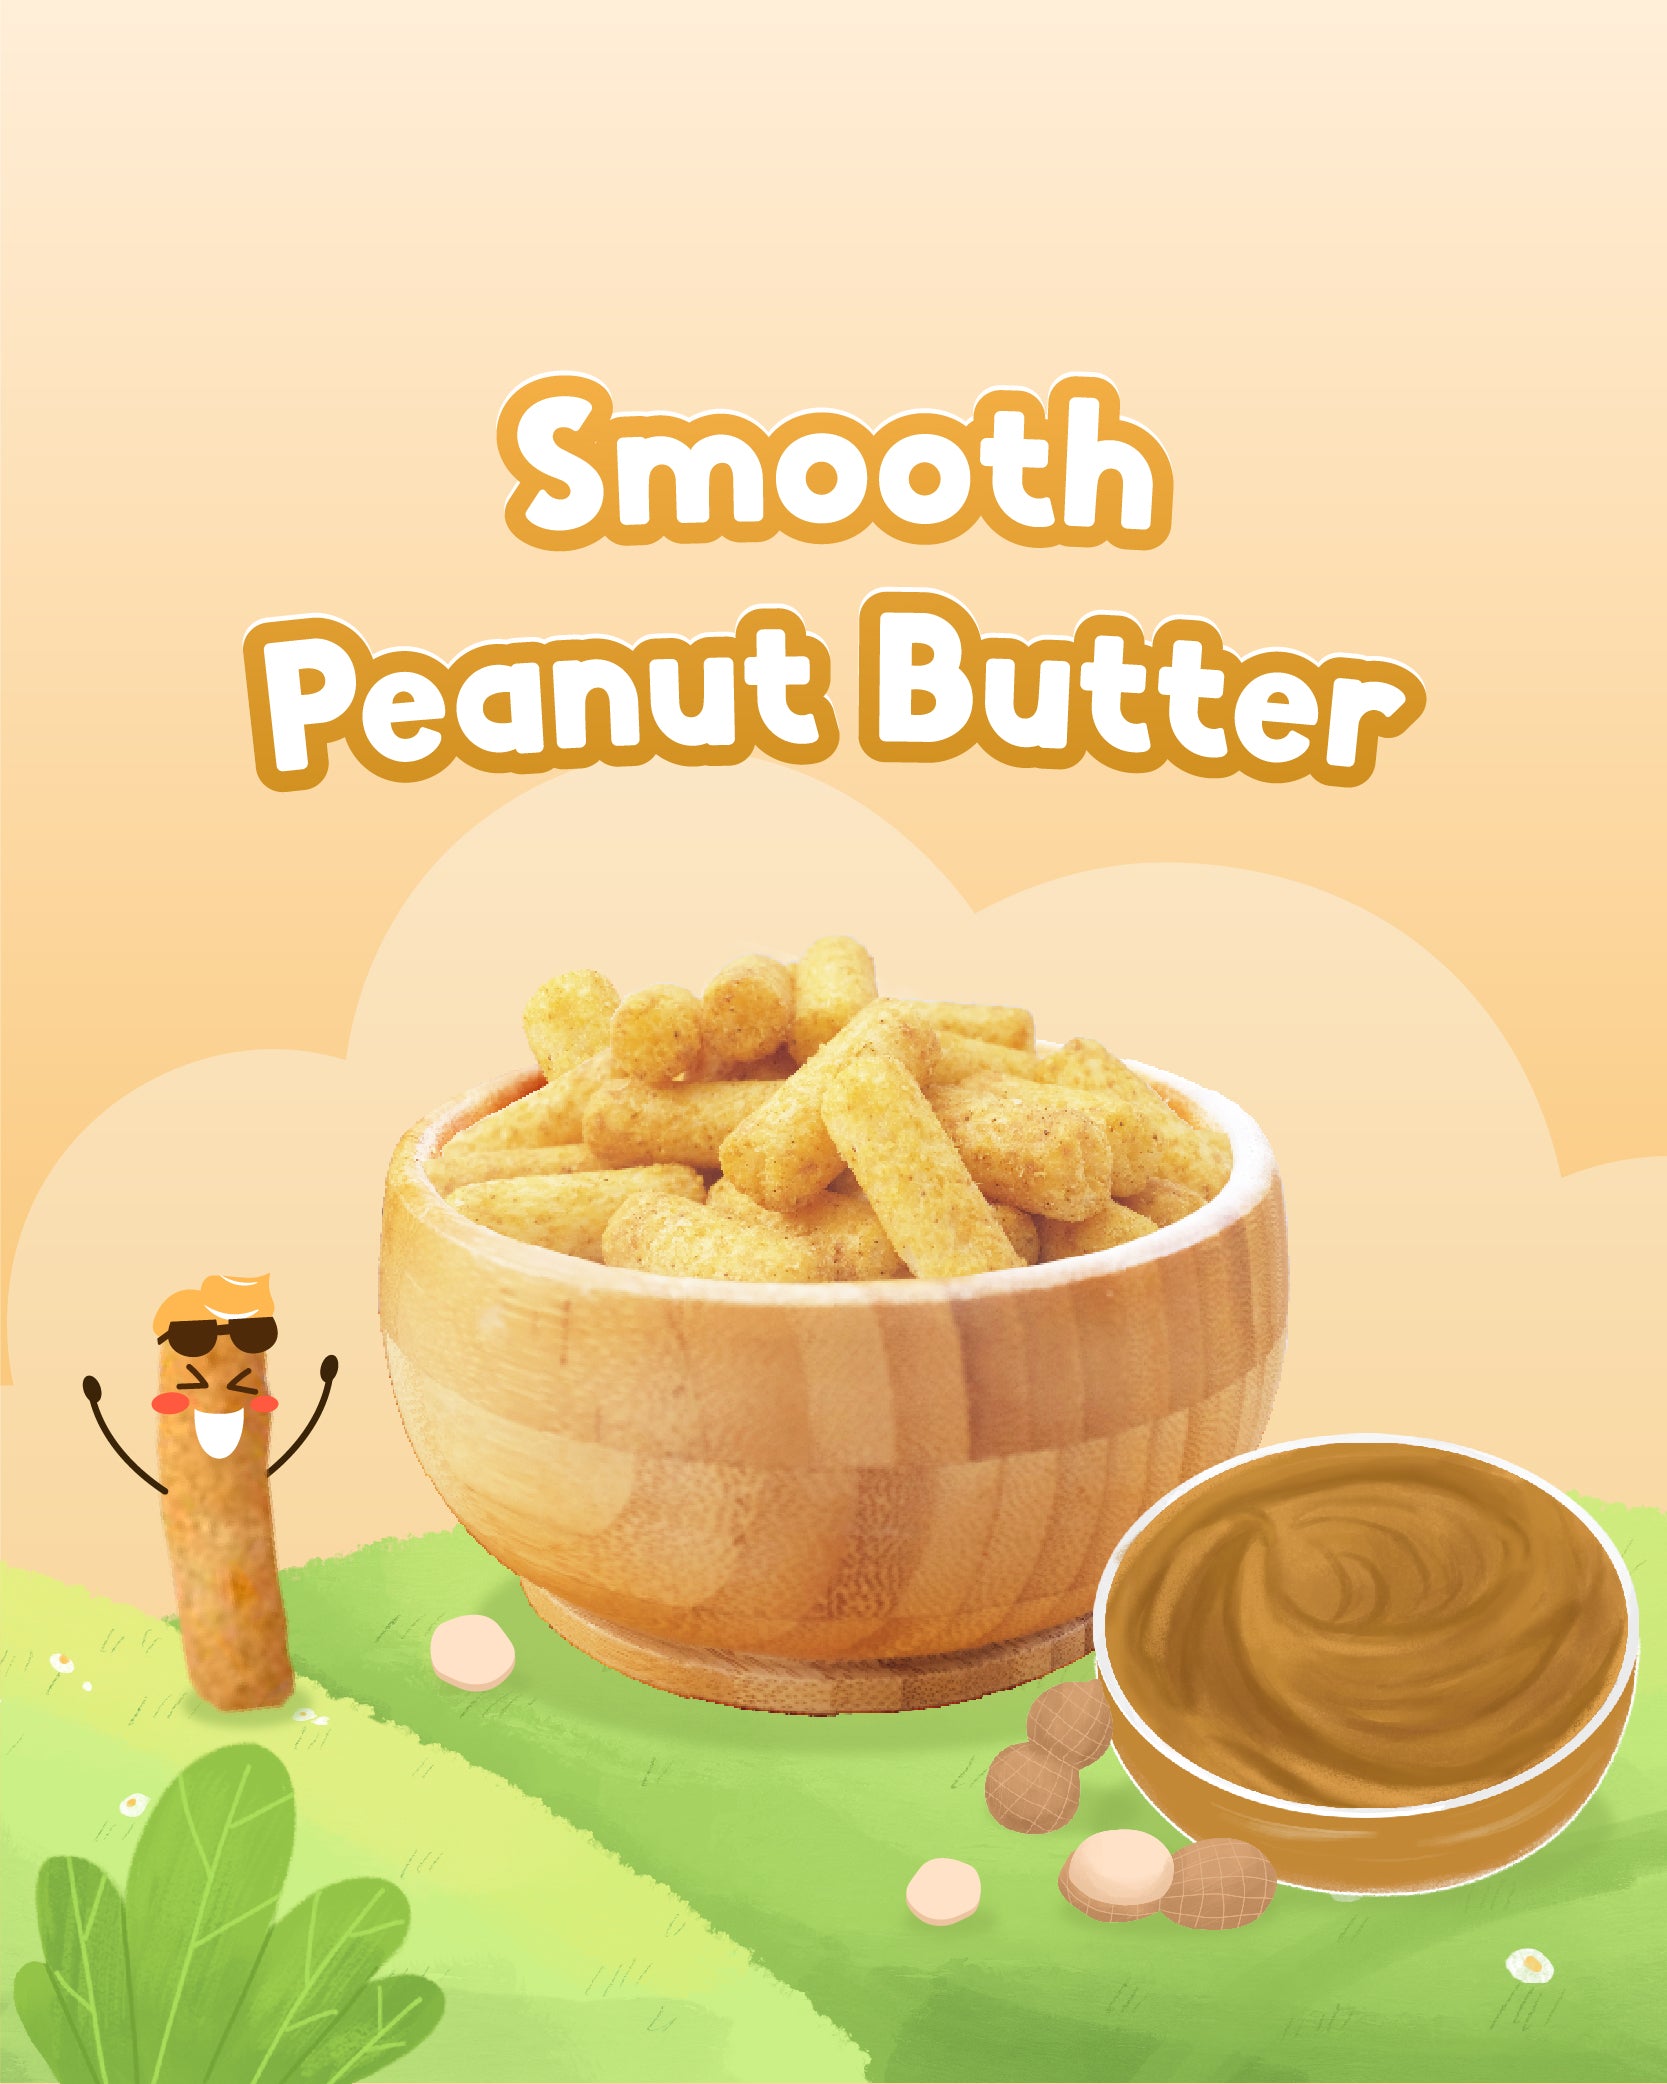 Alamii Peanut Butter Puffs